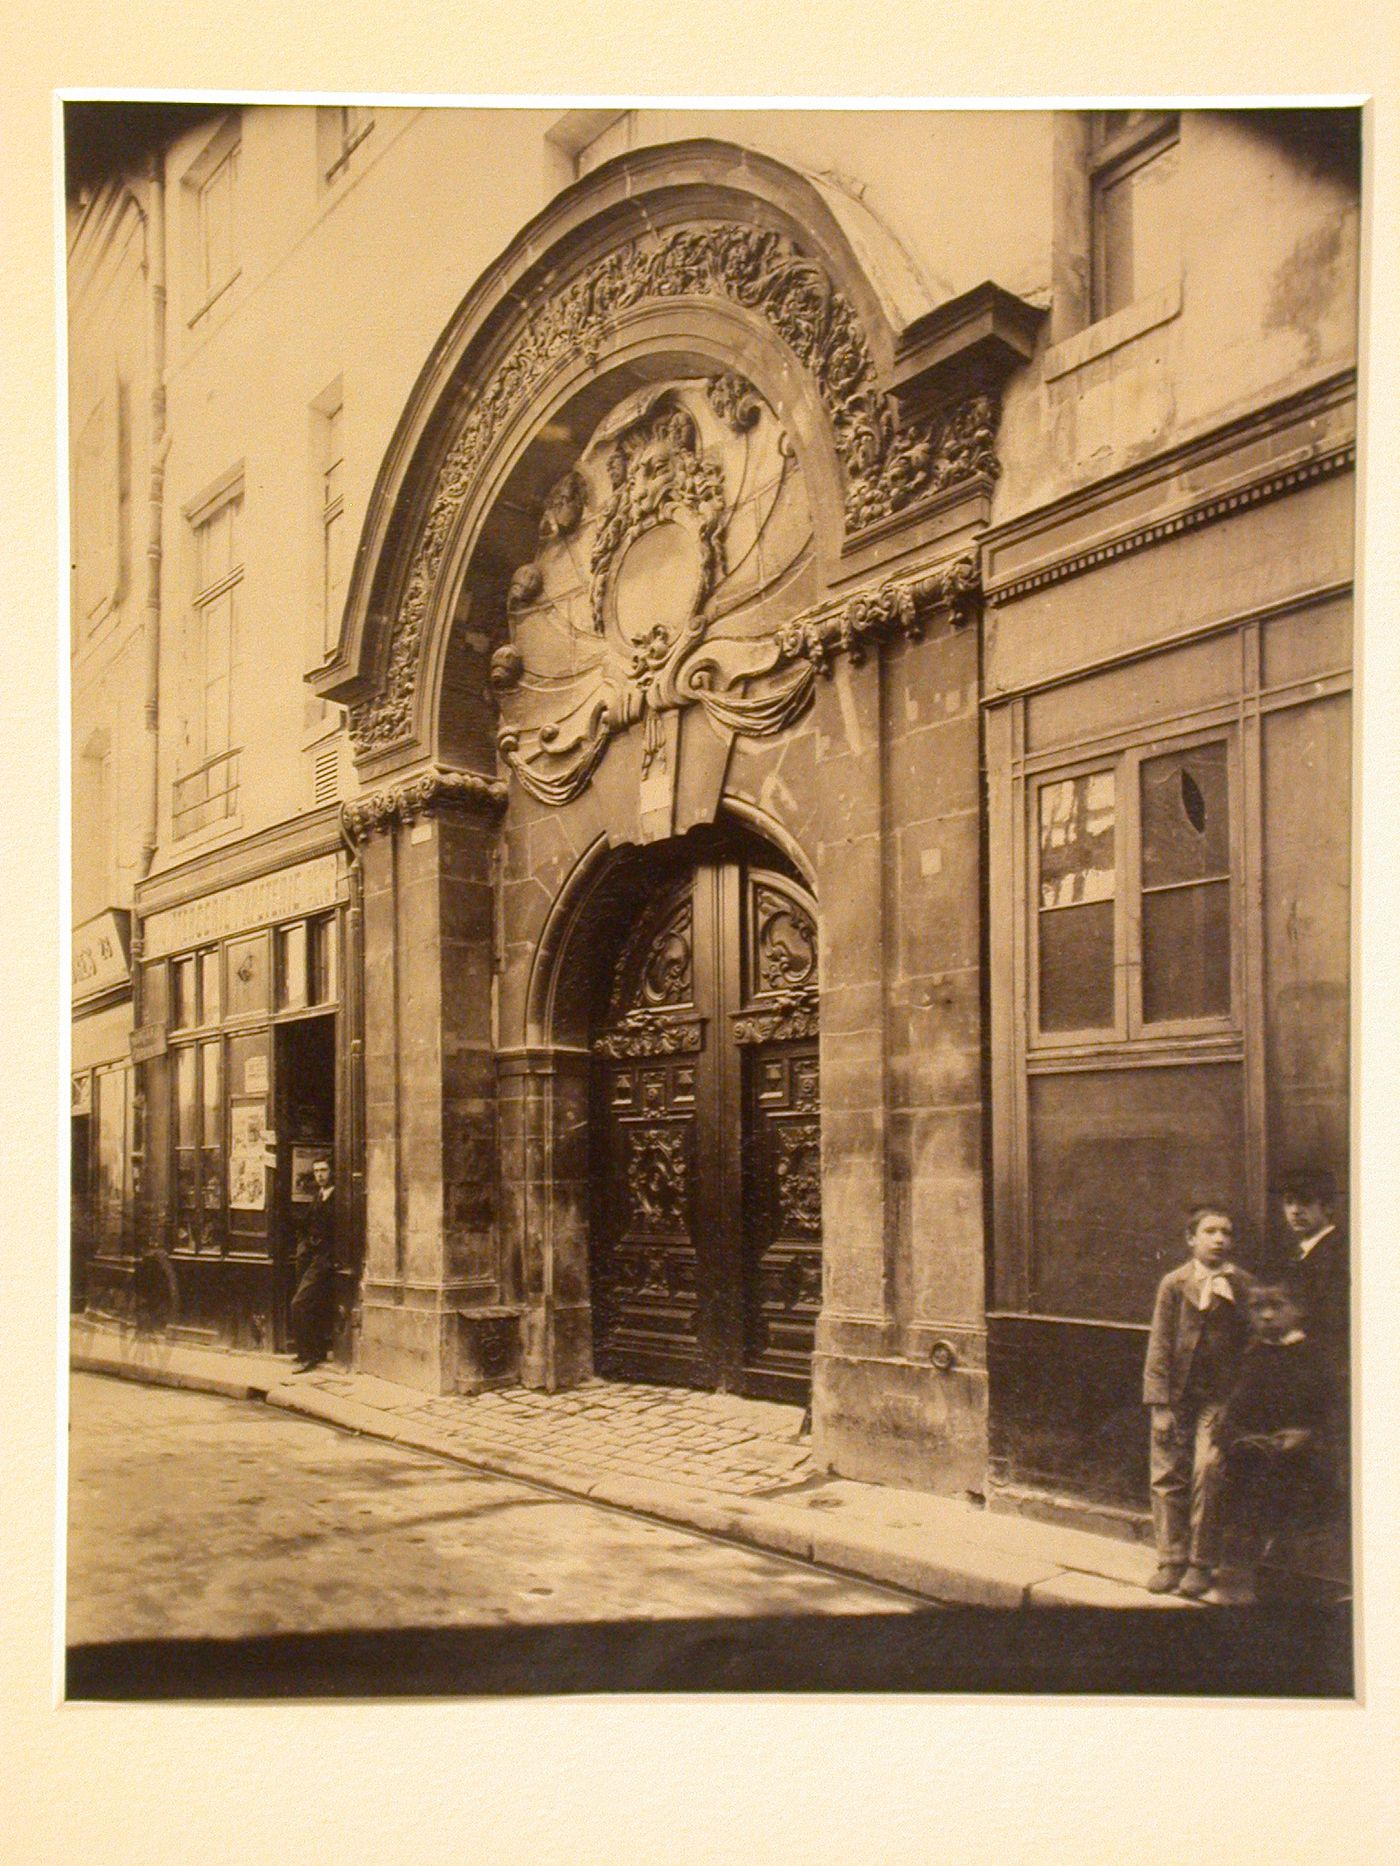 Portal of the Hôtel de Chalous-Luxembourg, No 26 rue Geoffroy - l'Asnier, 4iem arr., Paris, France